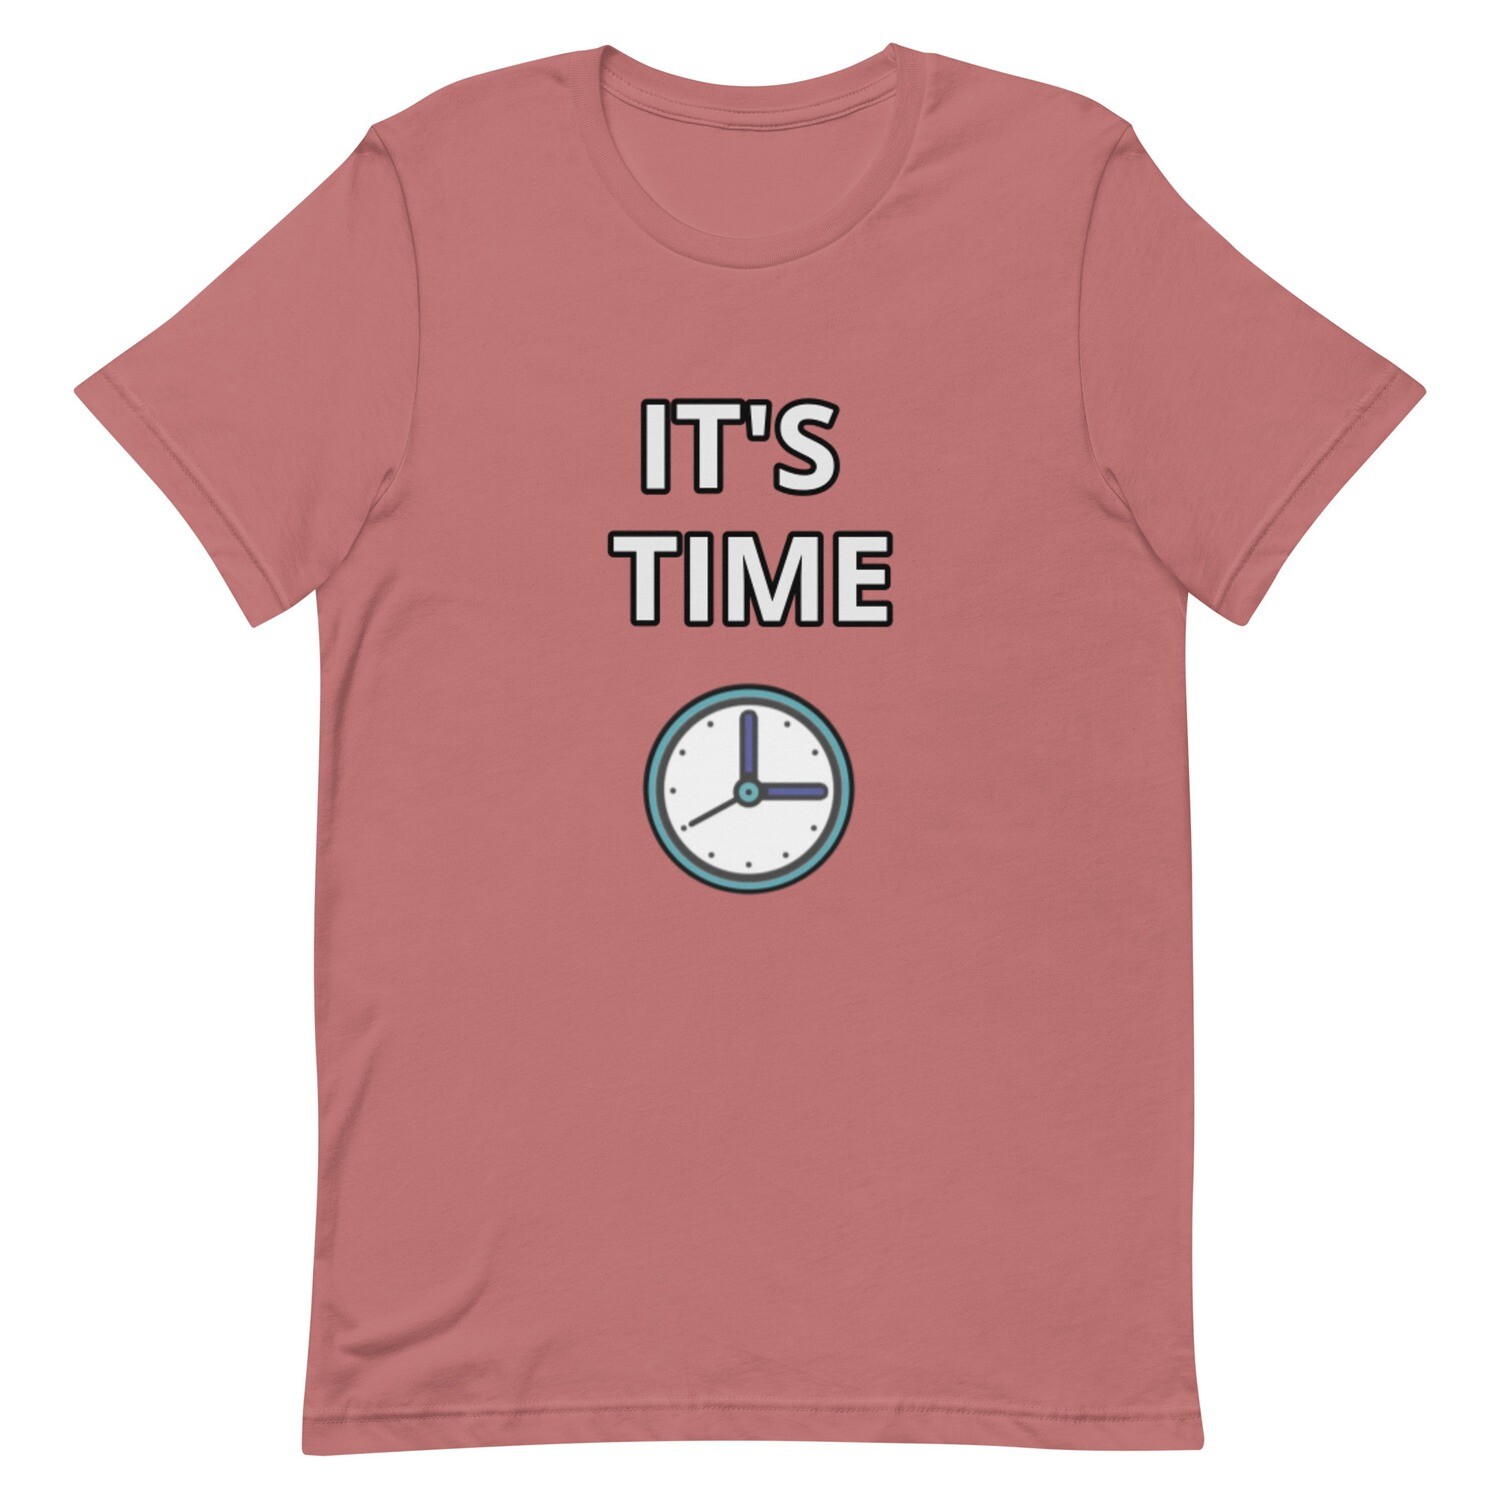 IT'S TIME T-Shirt (Choose Colour)